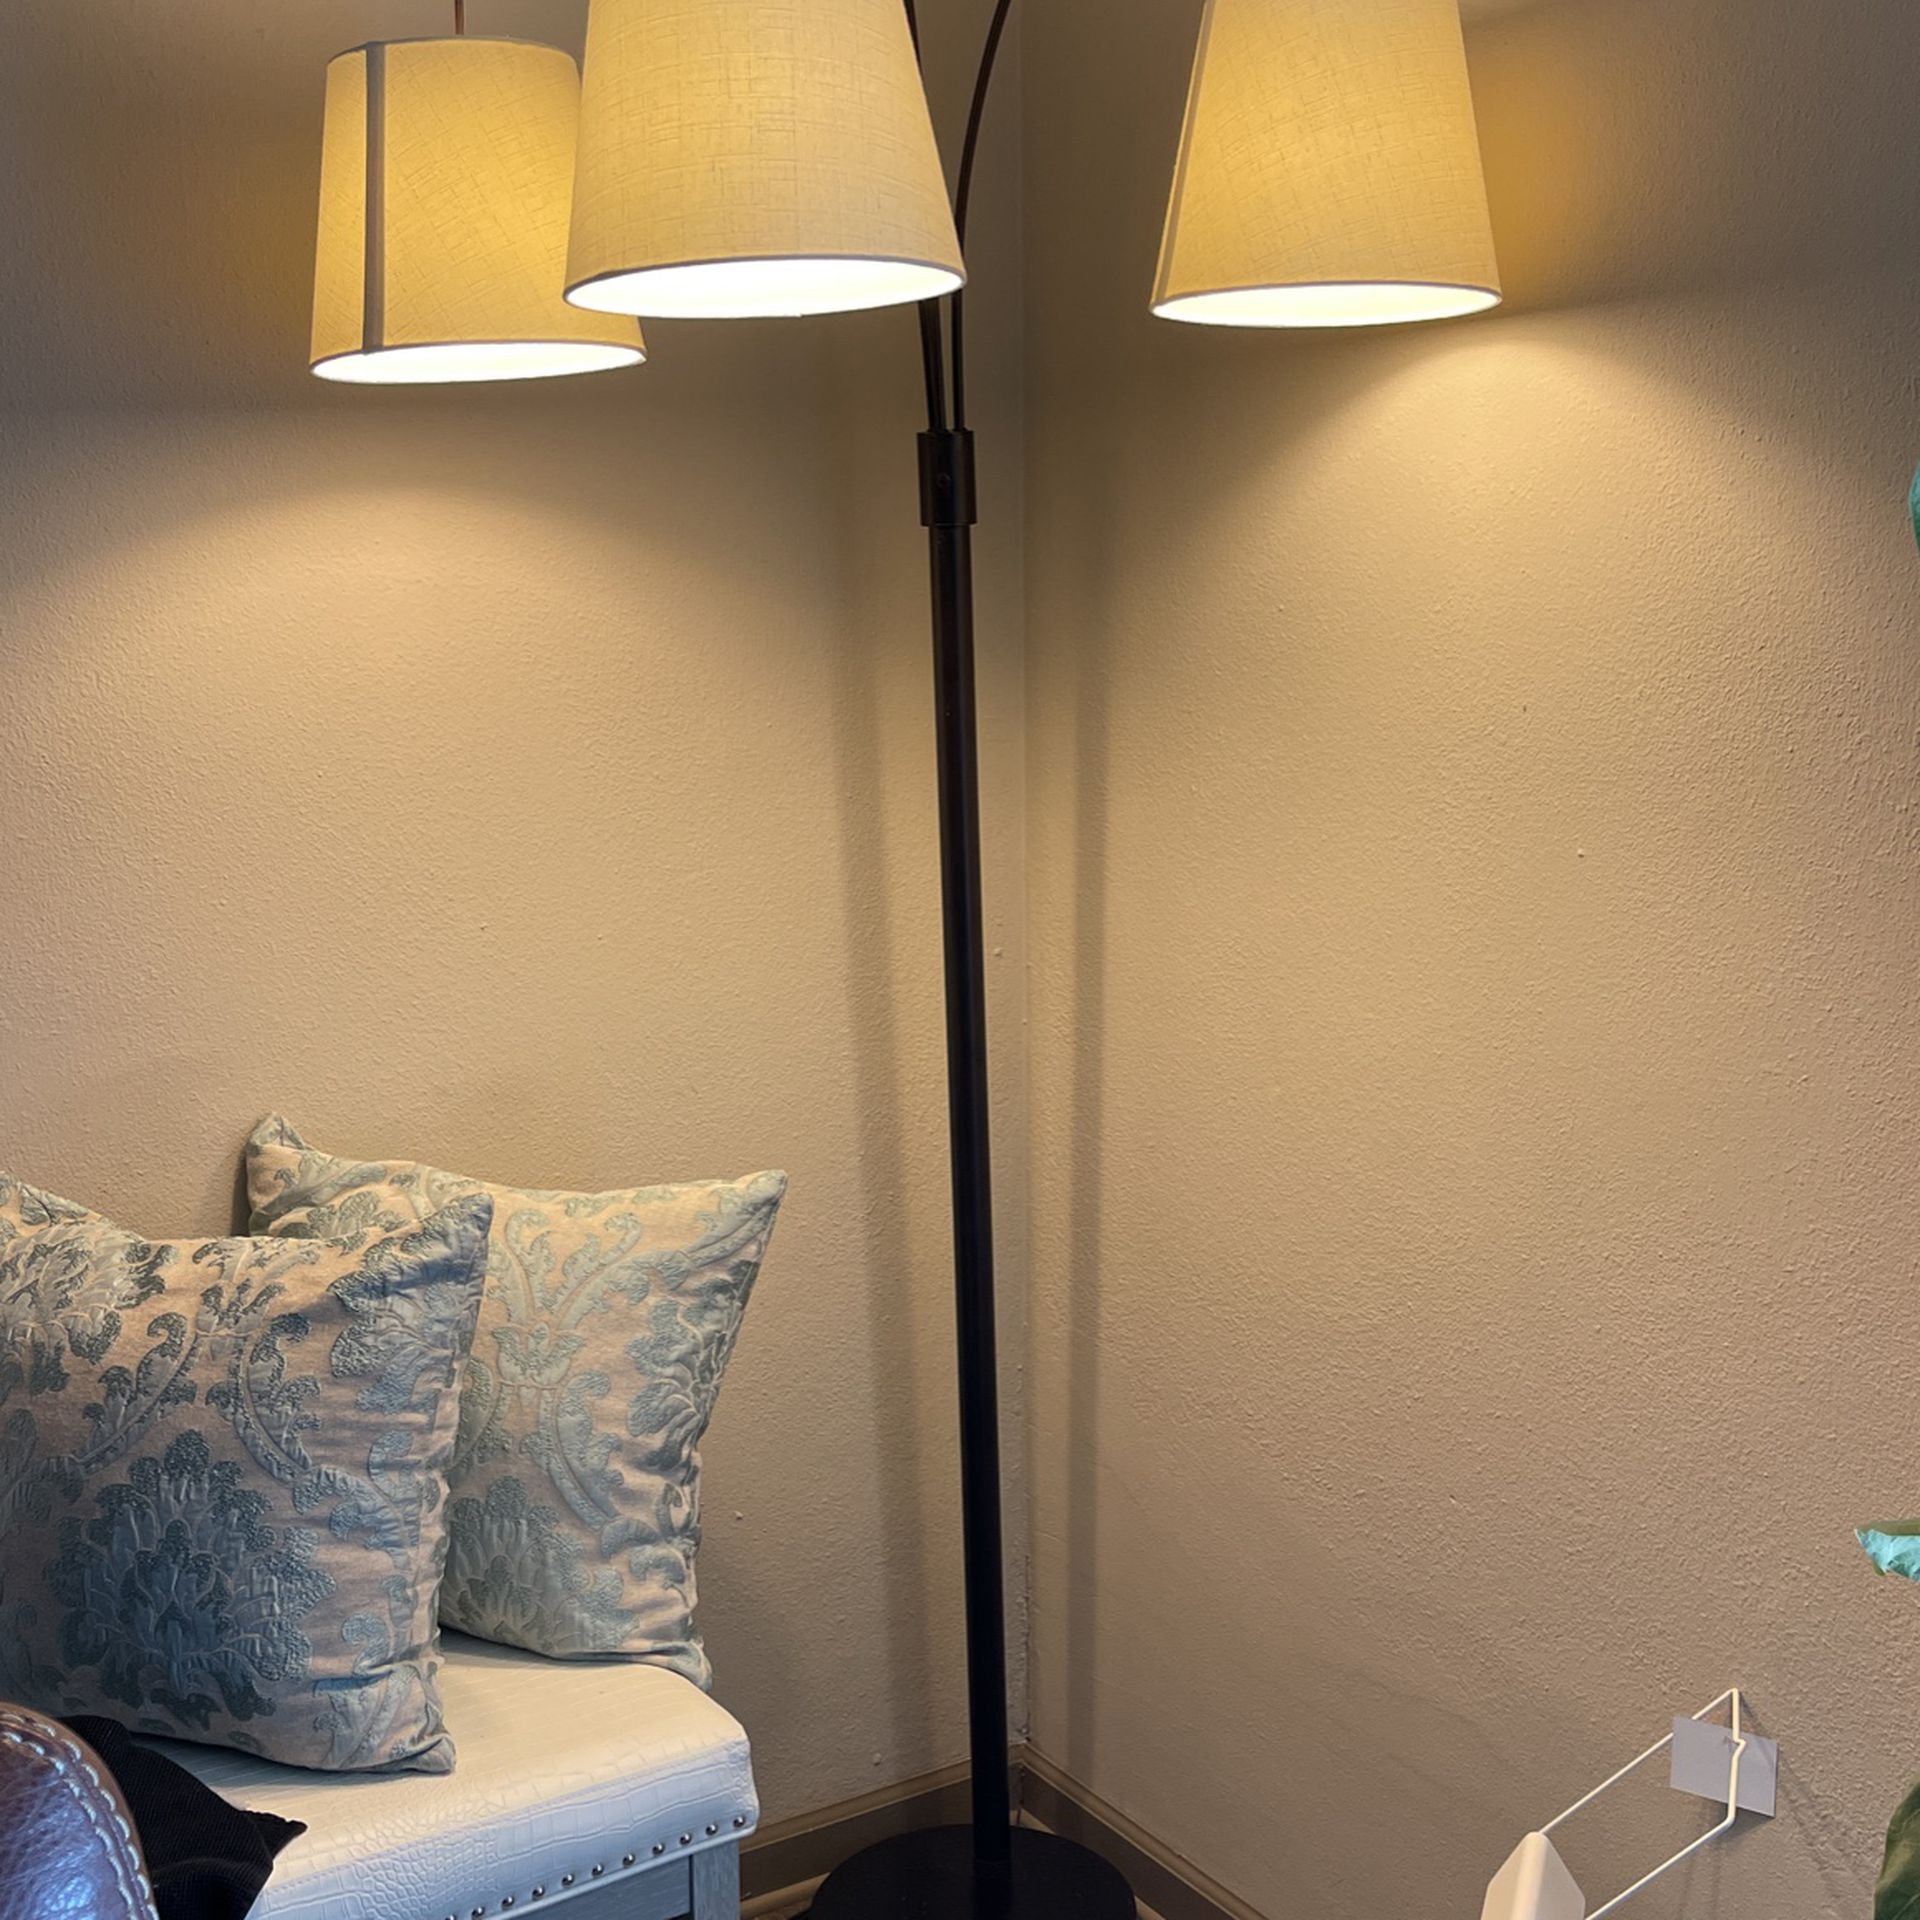 3 light floor lamp